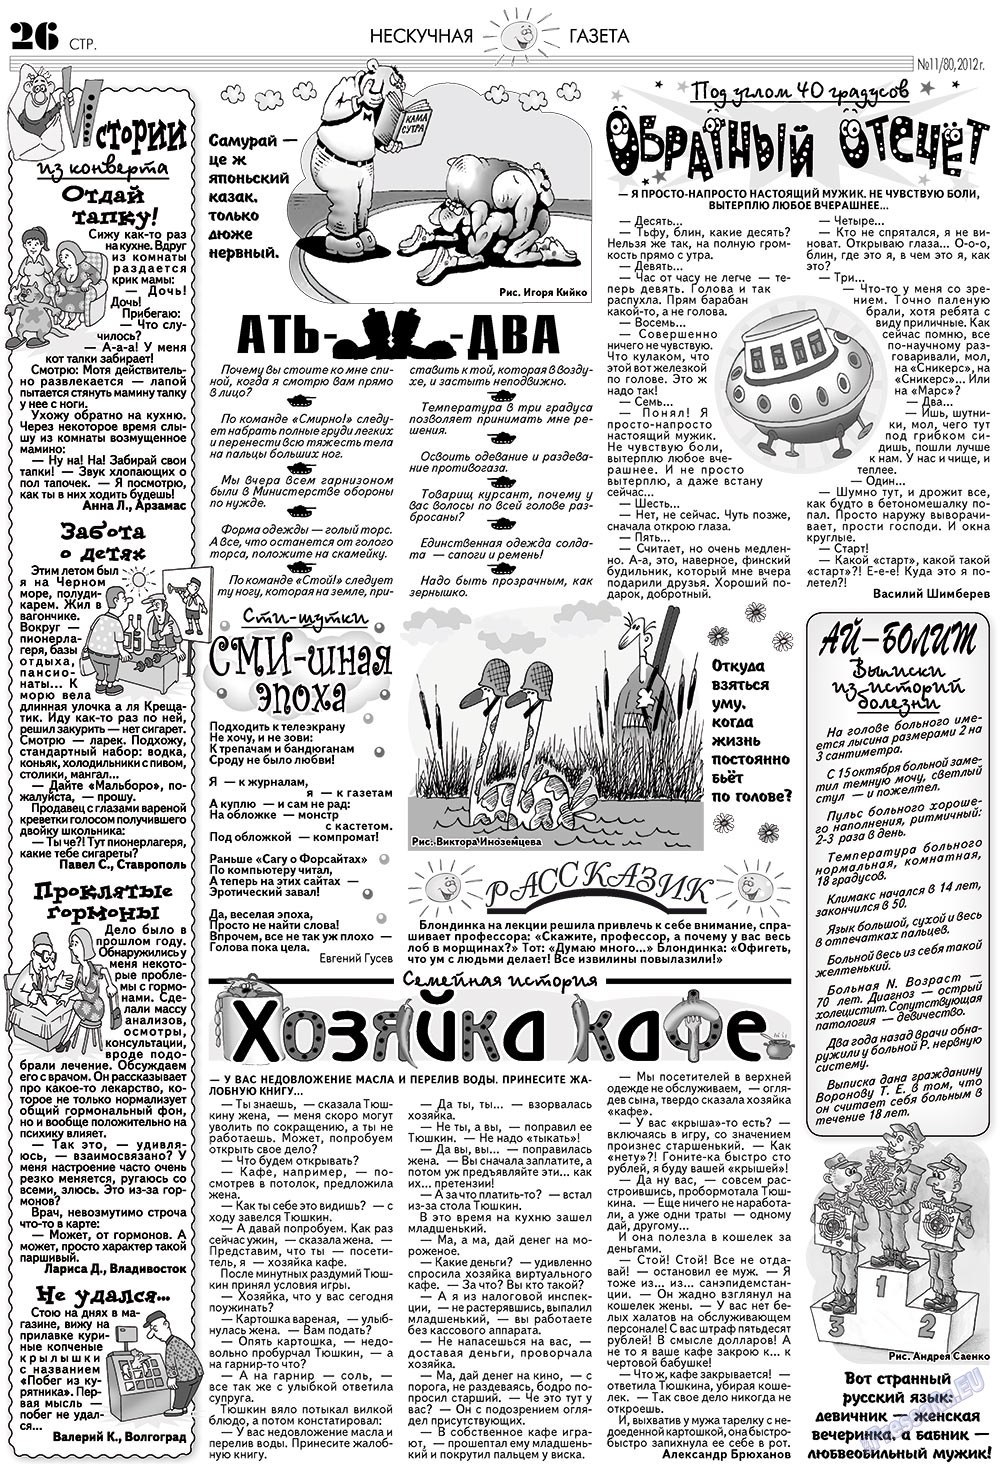 Нескучная газета, журнал. 2012 №11 стр.26